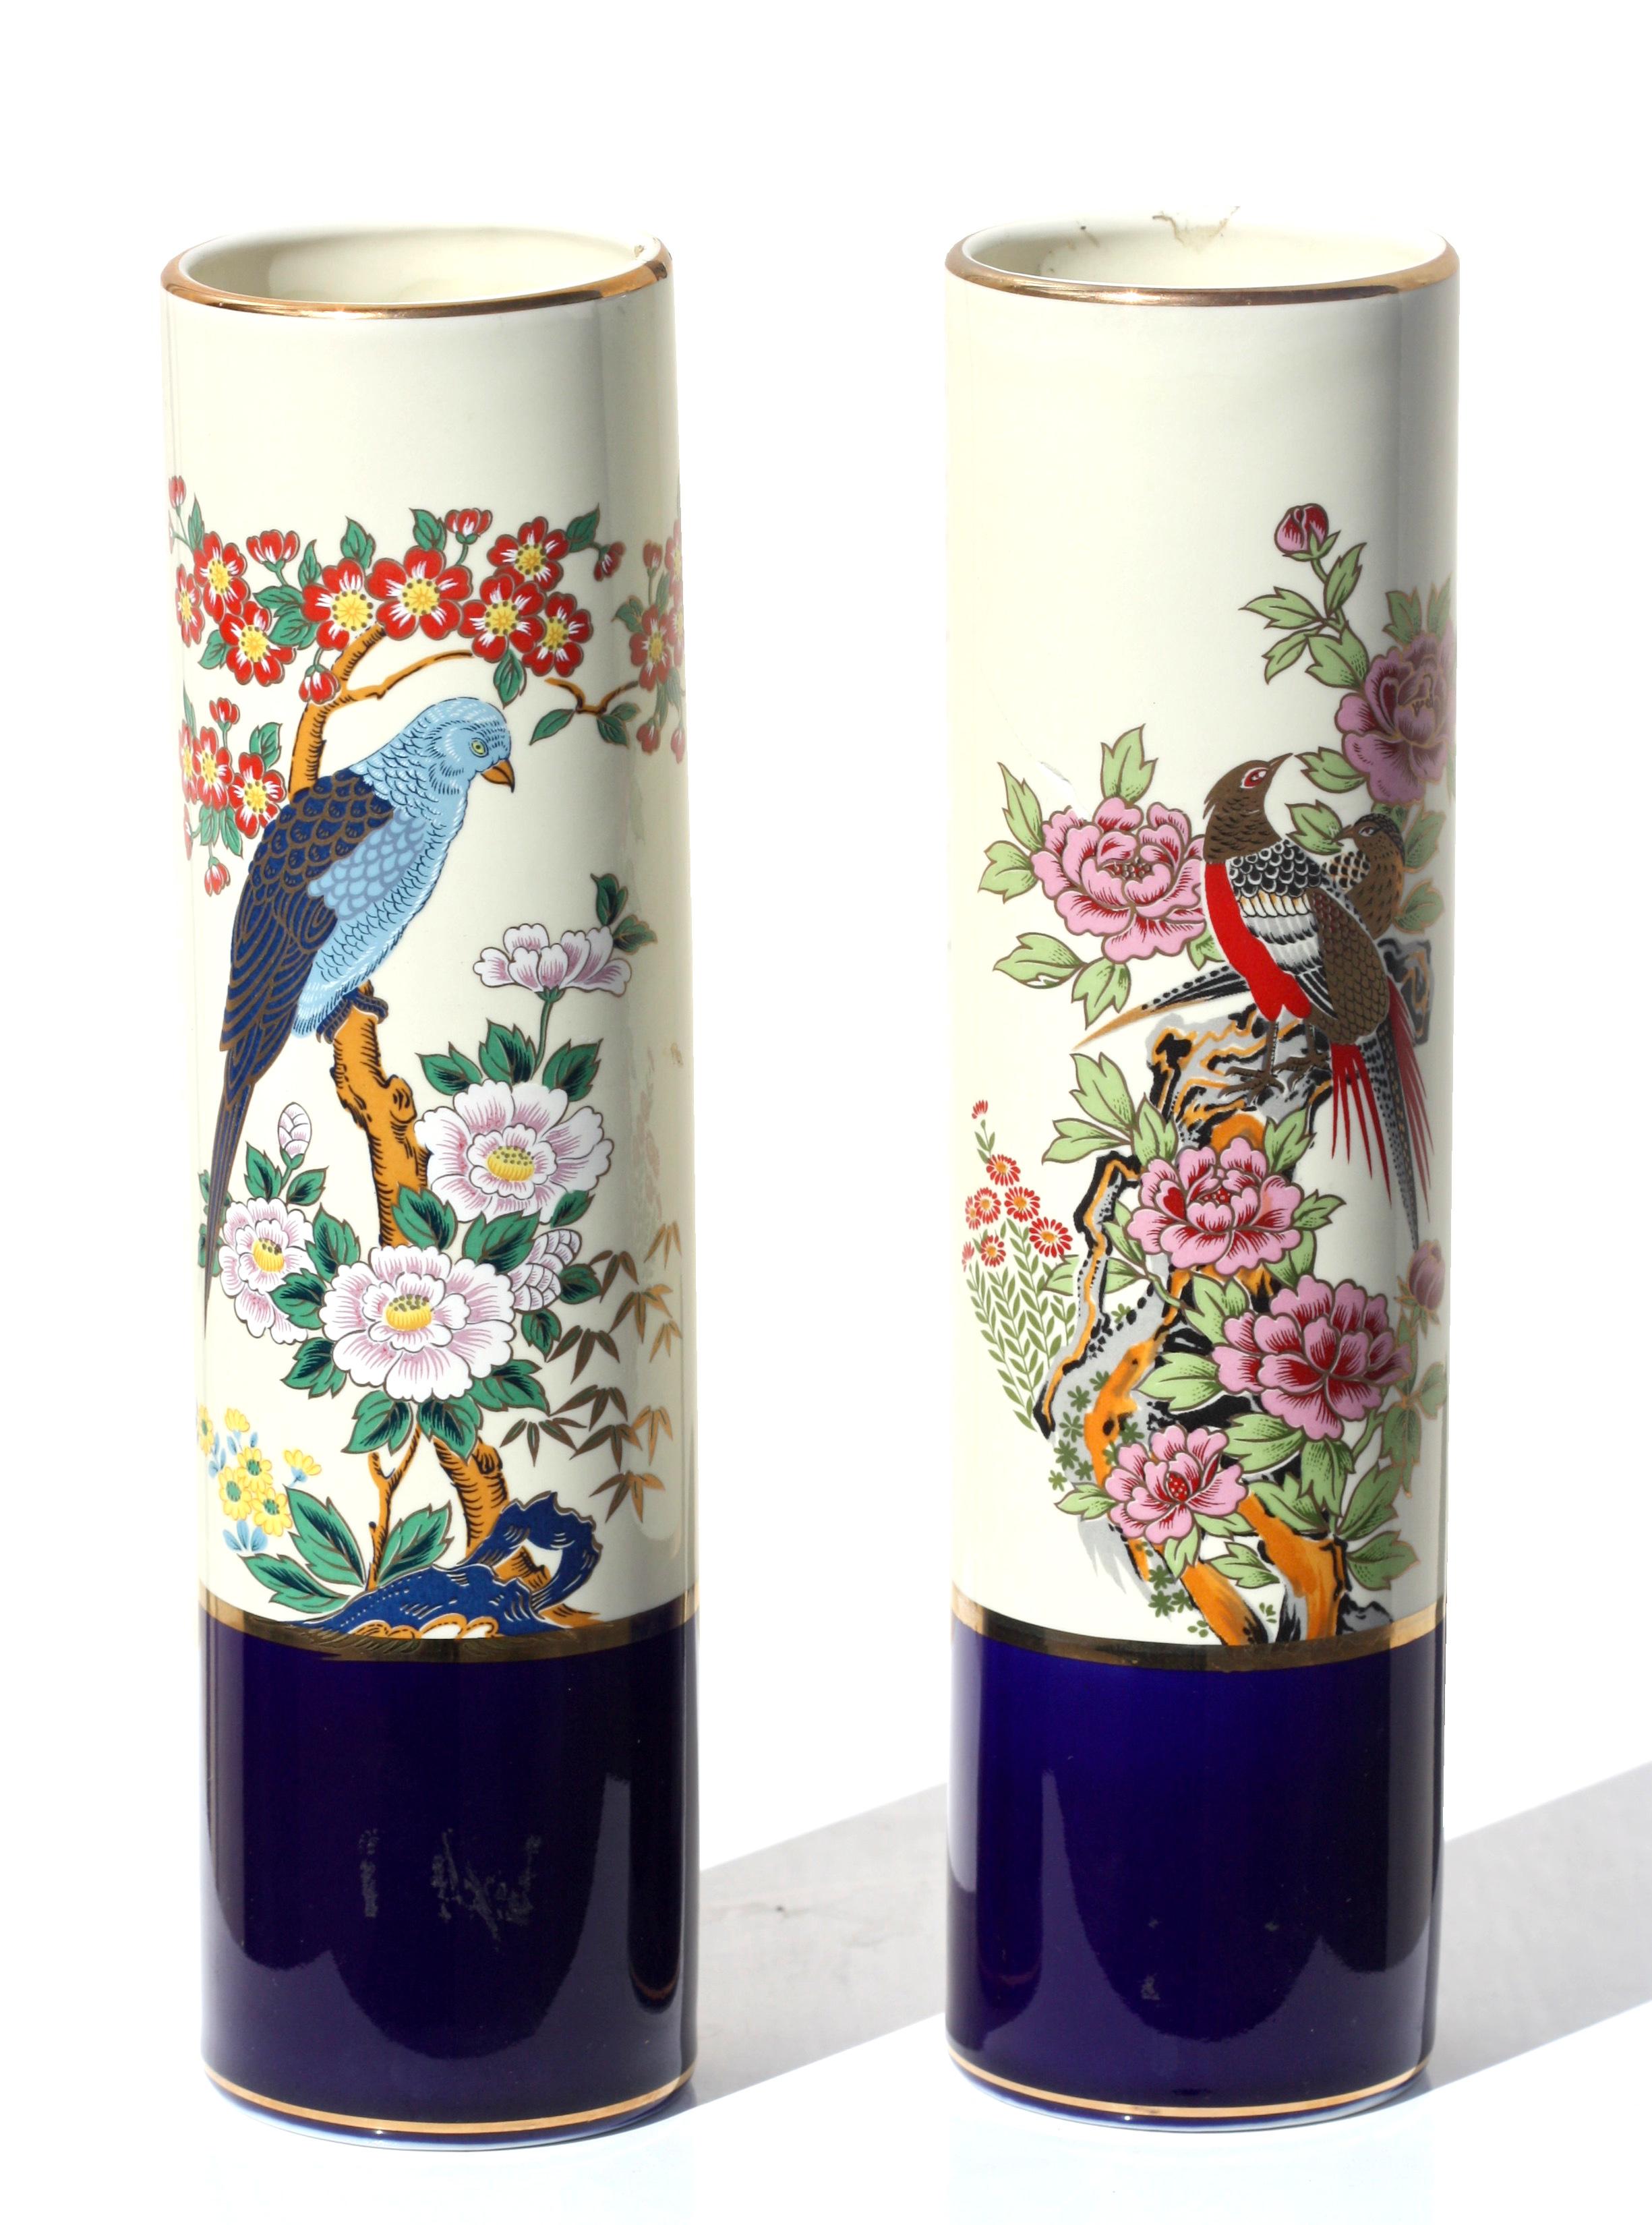 Paire de vases cylindriques en porcelaine de style japonais Kutani
peint d'oiseaux sur des branches fleuries, avec des bordures dorées sur un fond crème tacheté, marqué sur le dessous JAPAN
Hauteur 10 1/4 in.
26 cm
Diamètre de 2 1/2 pouces.